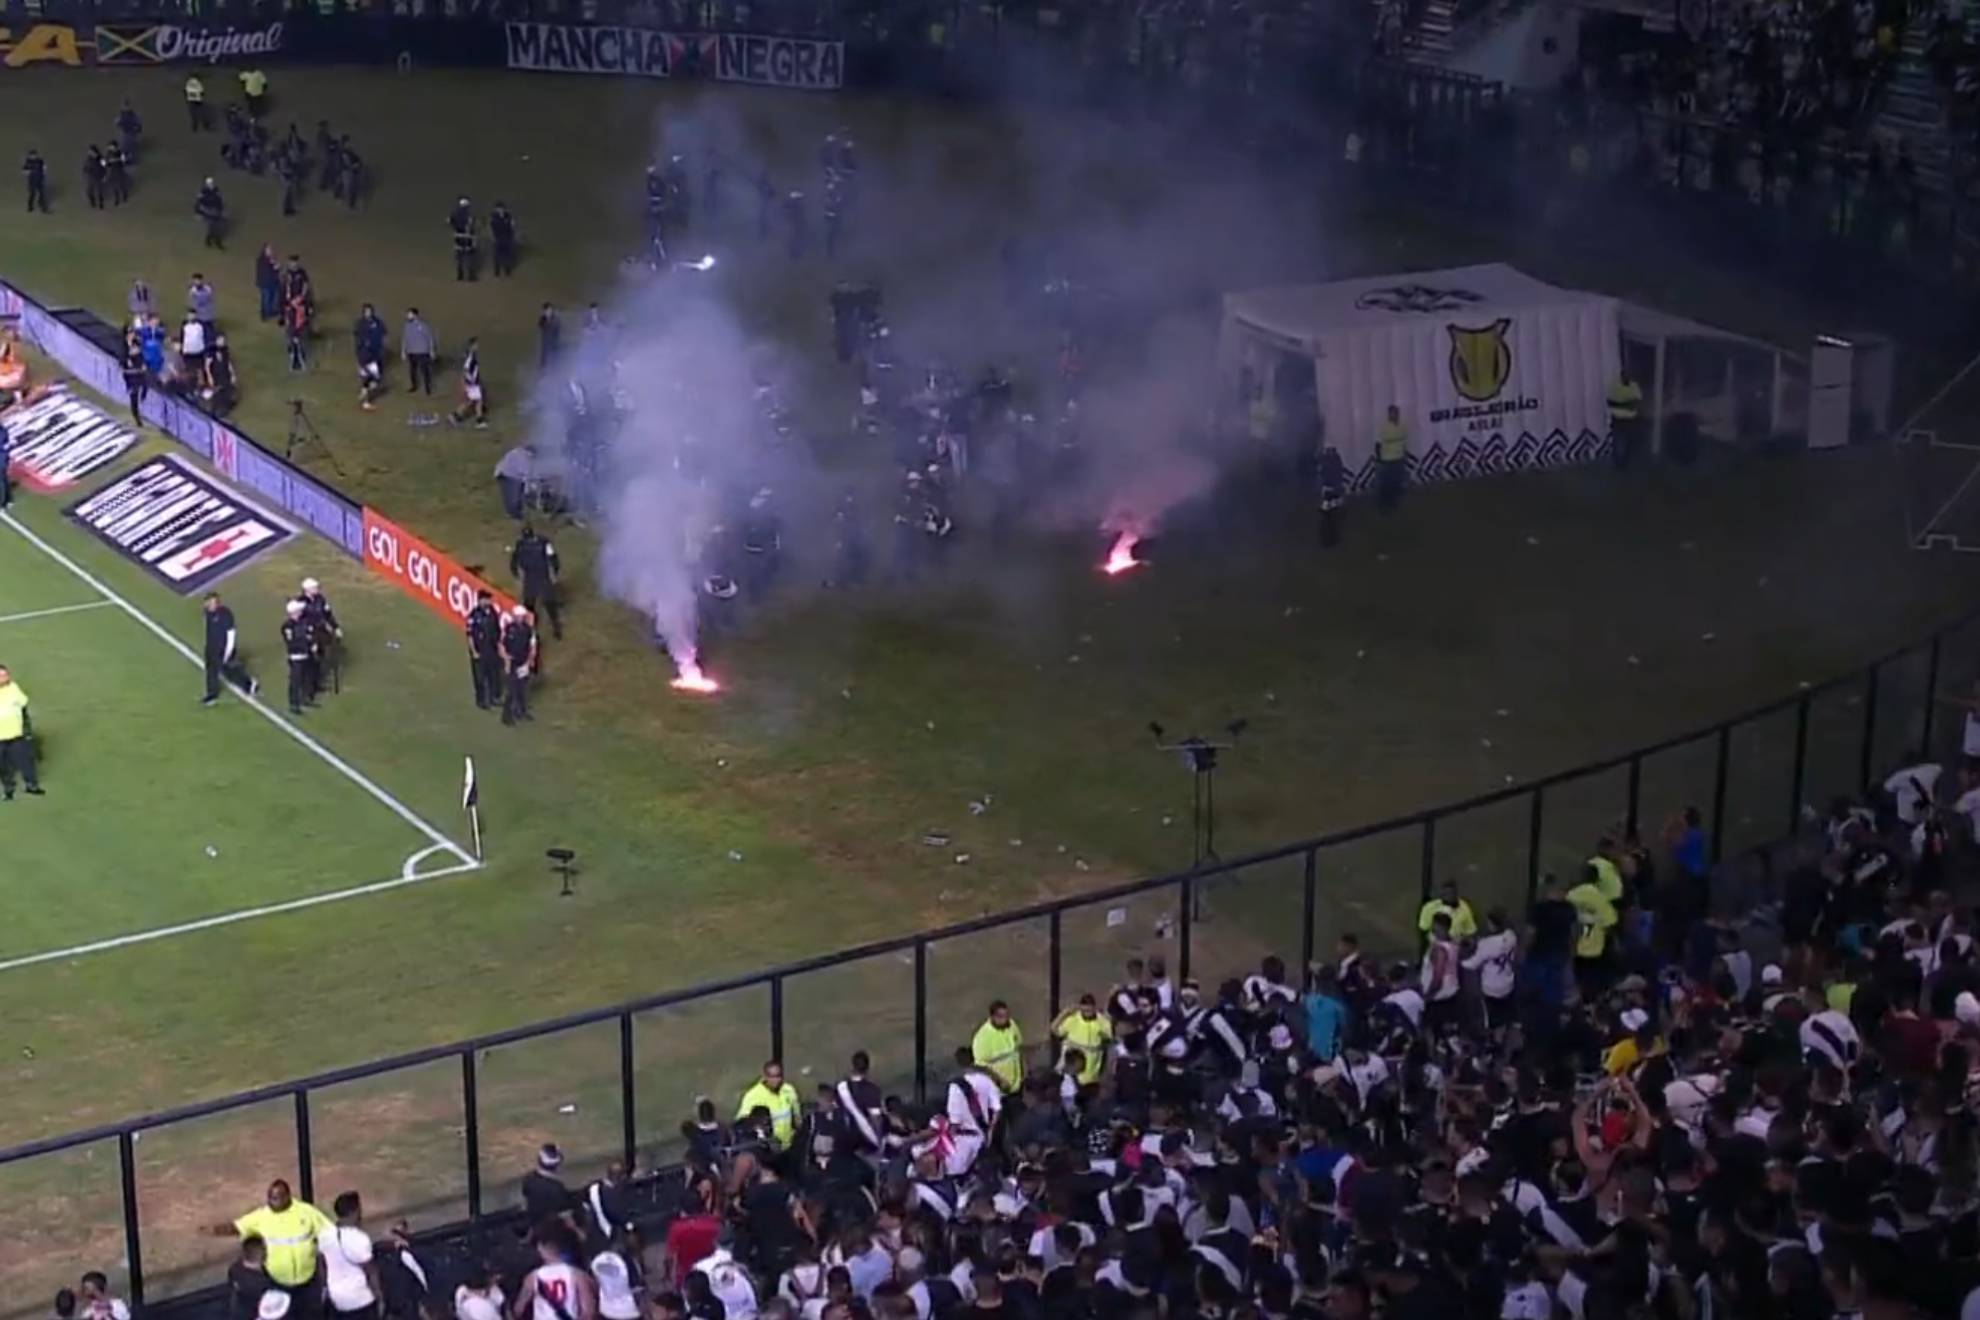 Fuegos y trifulca en el estadio del Vasco da Gama tras el partido contra el Goiás